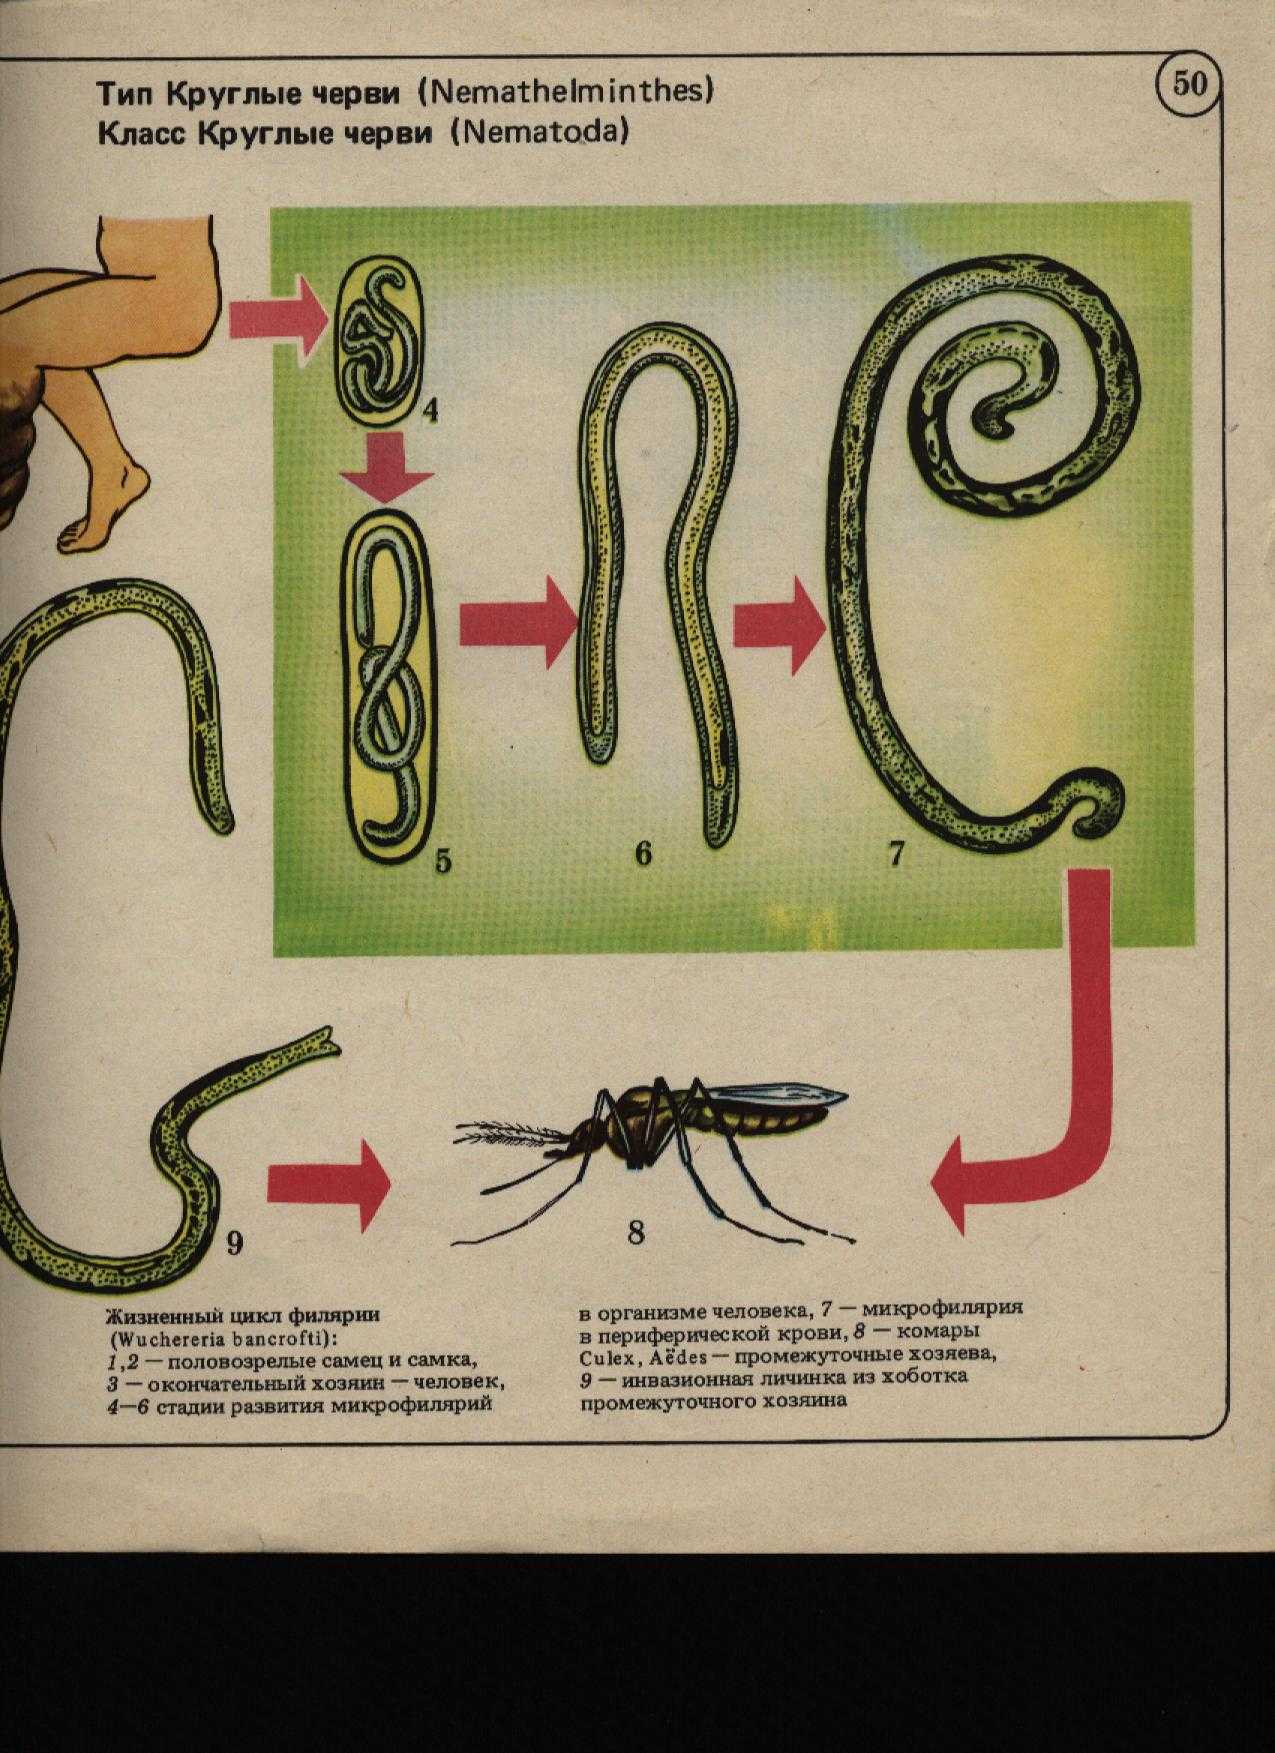 Тип первичнополостные или круглые черви: среда обитания и внешнее строение, особенности внутреннего расположения органов и размножение